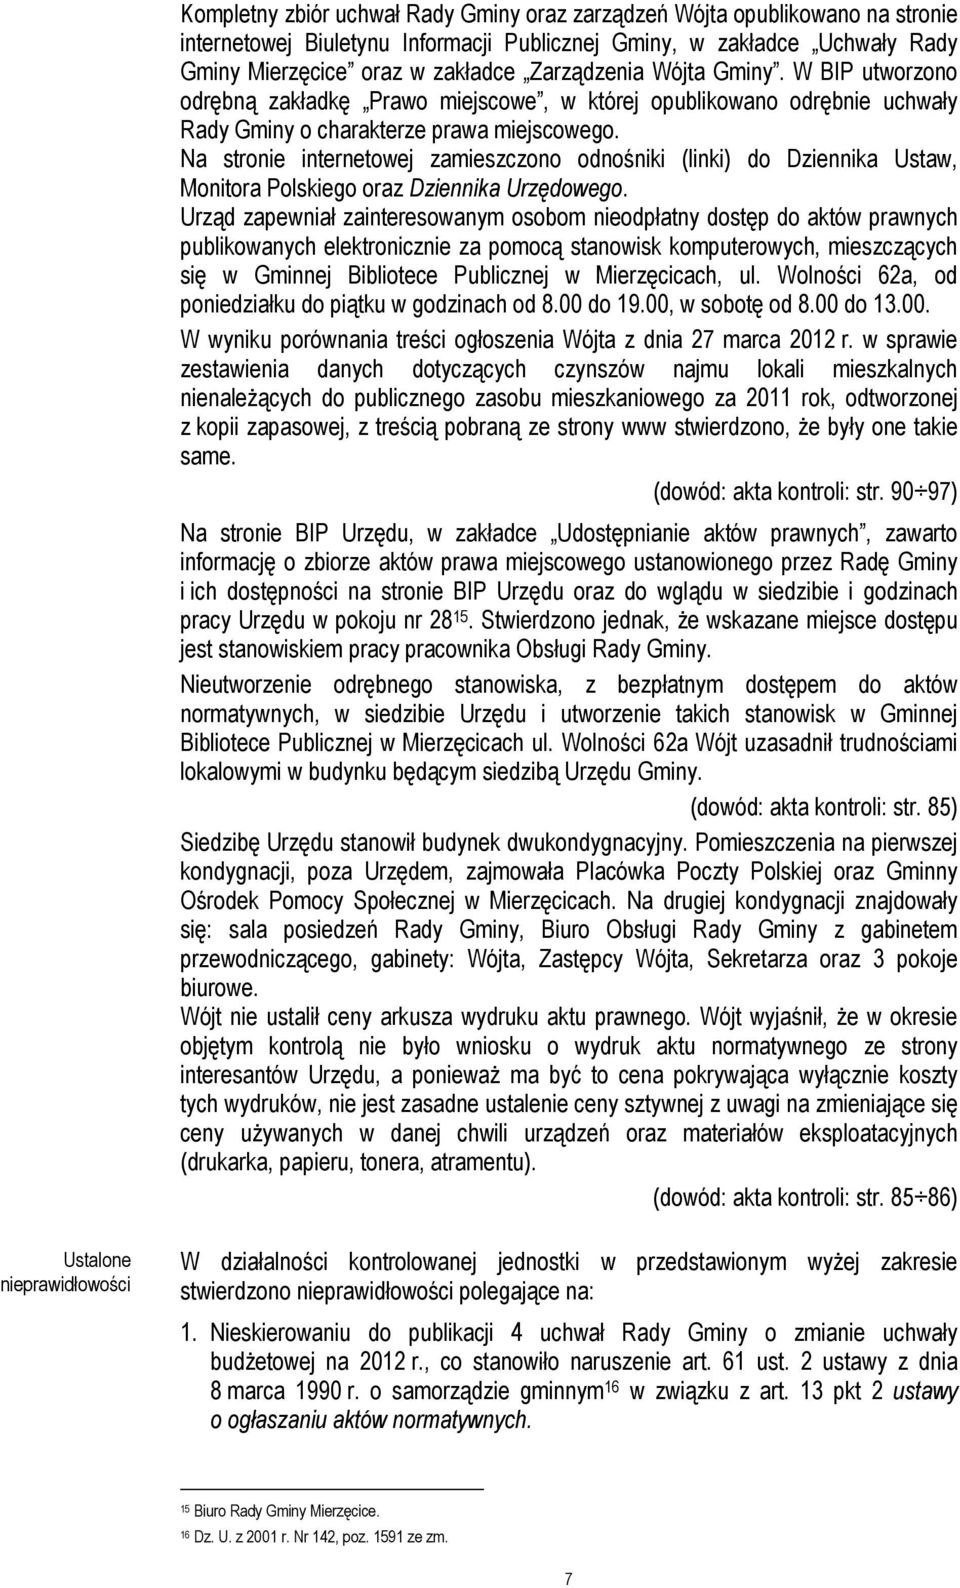 Na stronie internetowej zamieszczono odnośniki (linki) do Dziennika Ustaw, Monitora Polskiego oraz Dziennika Urzędowego.